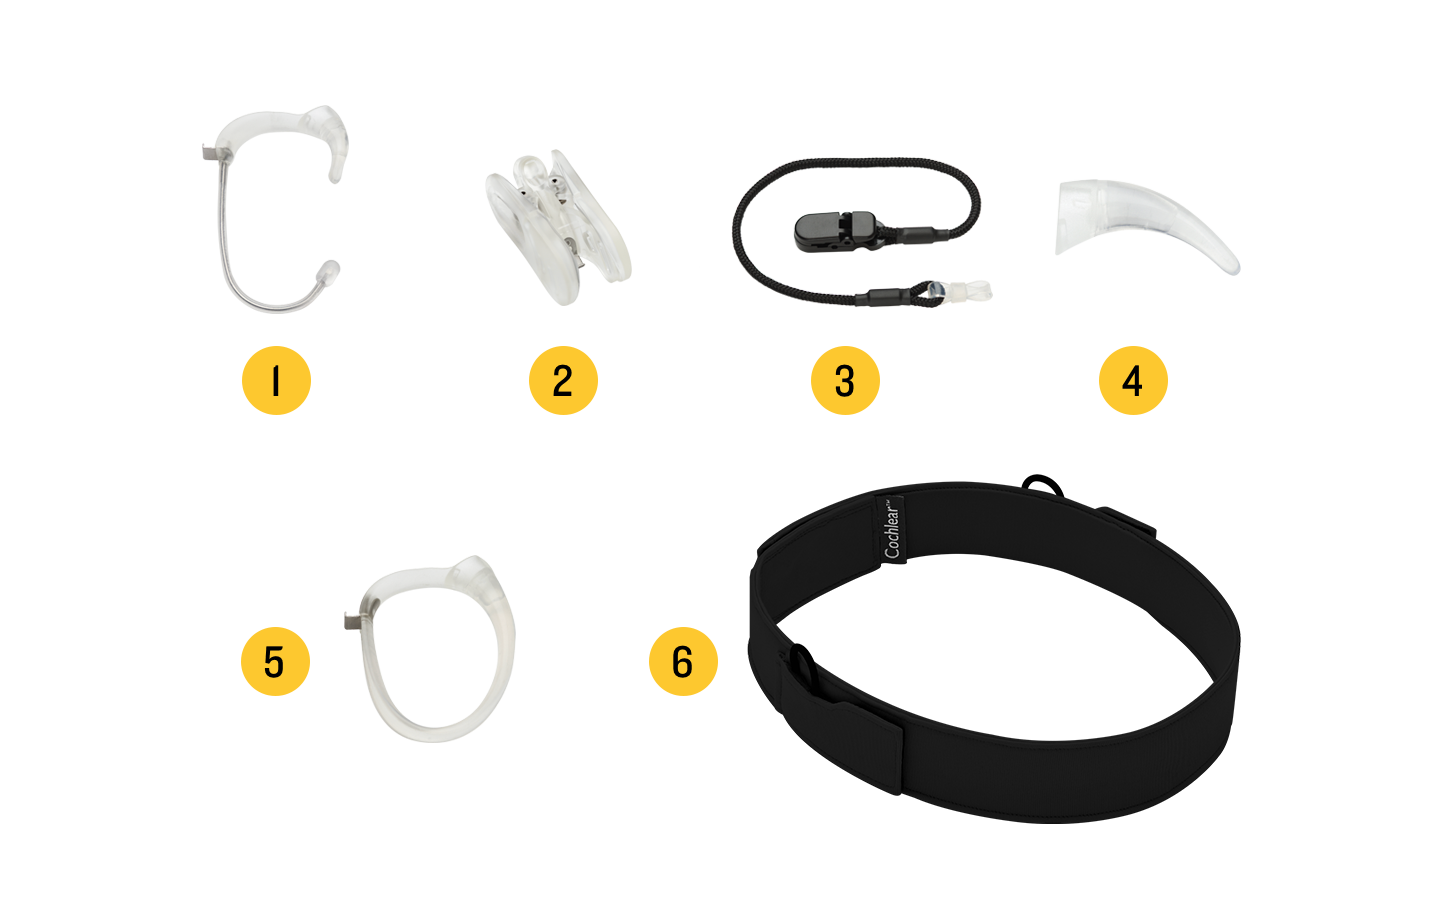 Afbeelding van de accessoires voor de Nucleus 7-geluidsprocessor: 1. Snugfit, 2. Koala-clip, 3. Veiligheidssnoertje, 4. Oorhaak